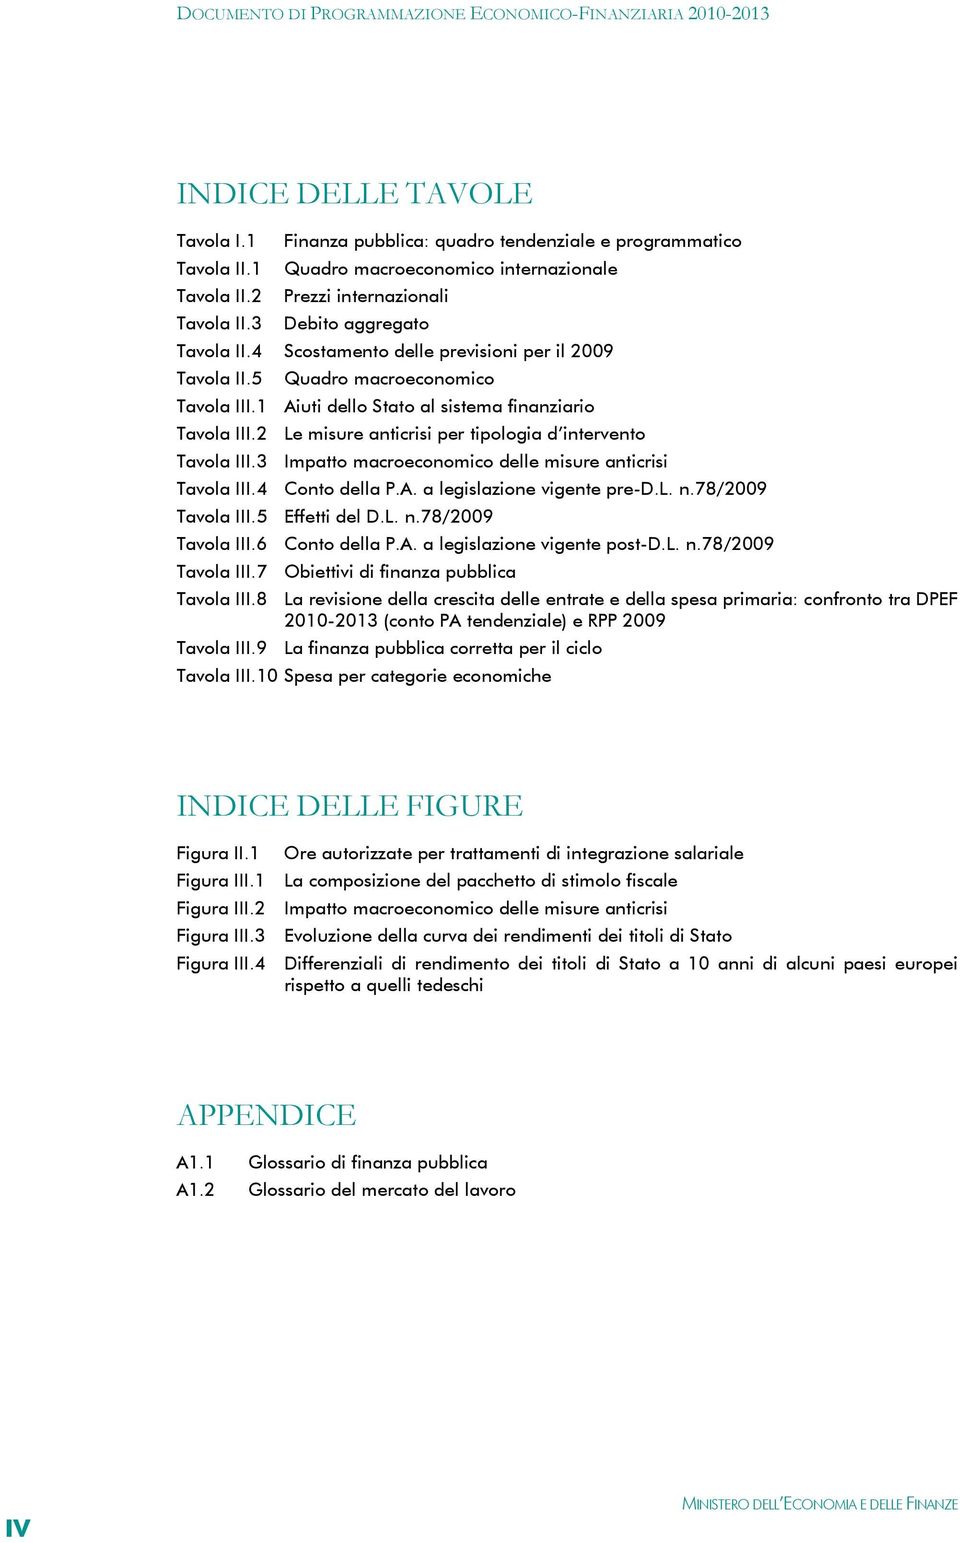 2 Le misure anticrisi per tipologia d intervento Tavola III.3 Impatto macroeconomico delle misure anticrisi Tavola III.4 Conto della P.A. a legislazione vigente pre-d.l. n.78/2009 Tavola III.